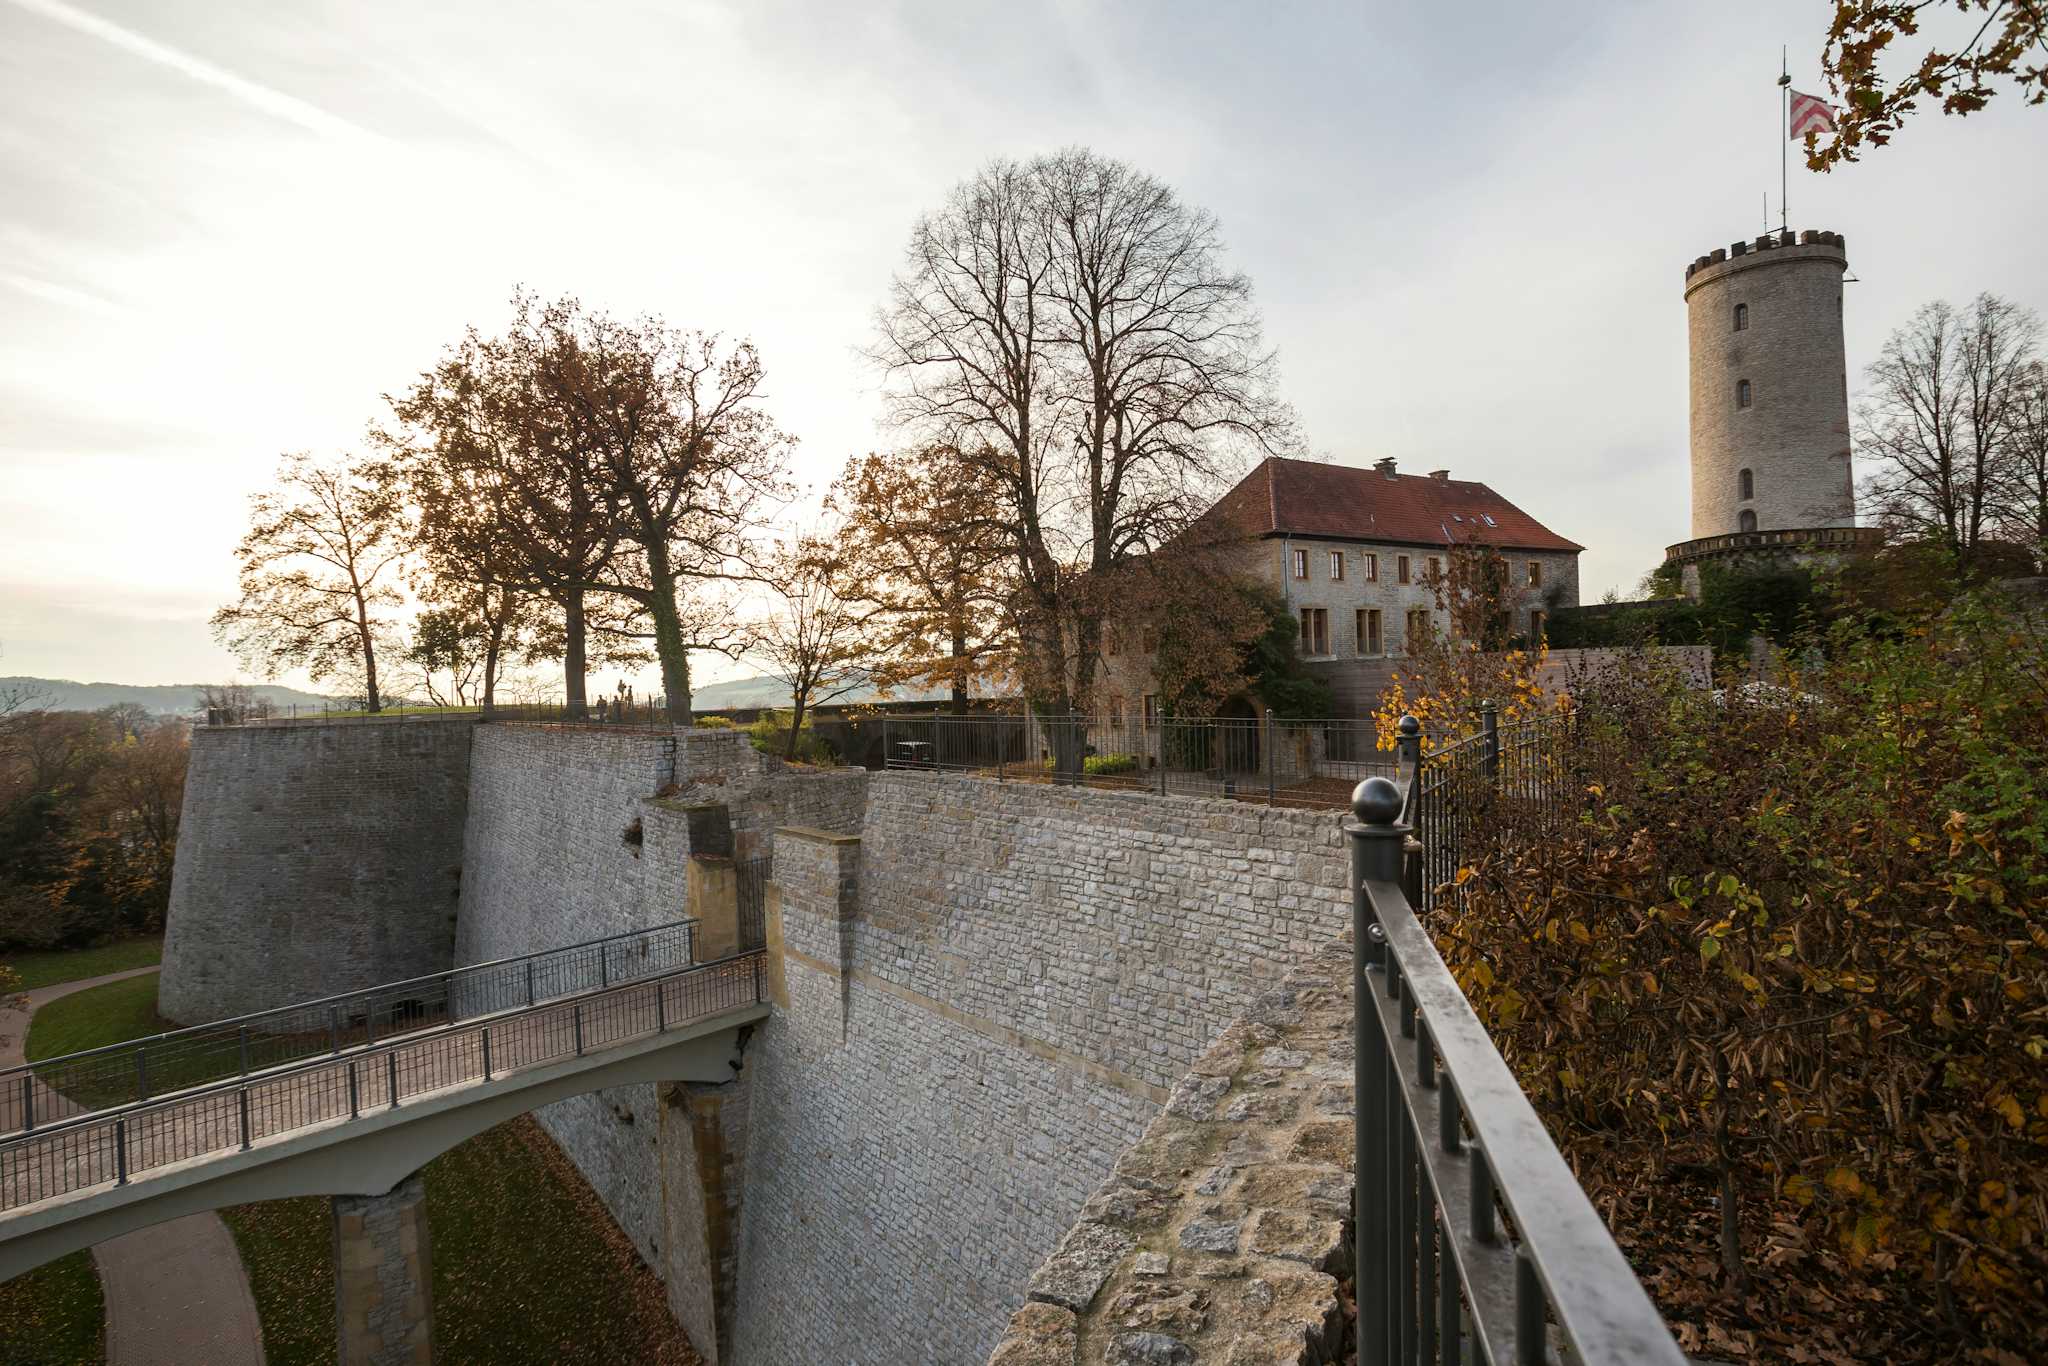 Sparrenberg Castle